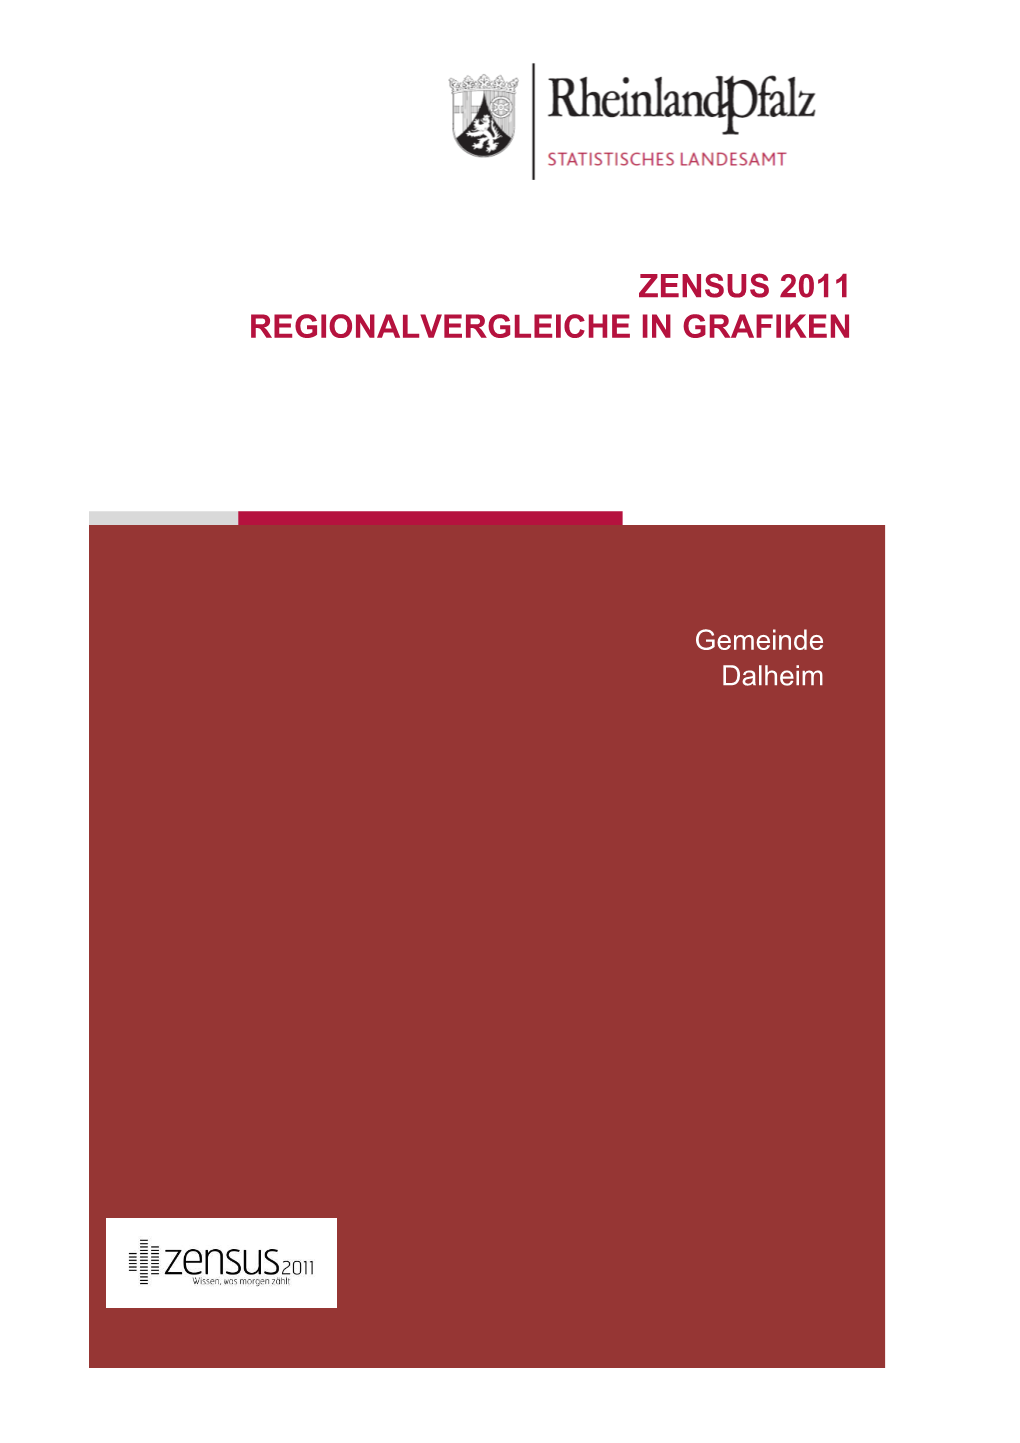 Regionalvergleiche in Grafiken Am 9. Mai 2011, Dalheim